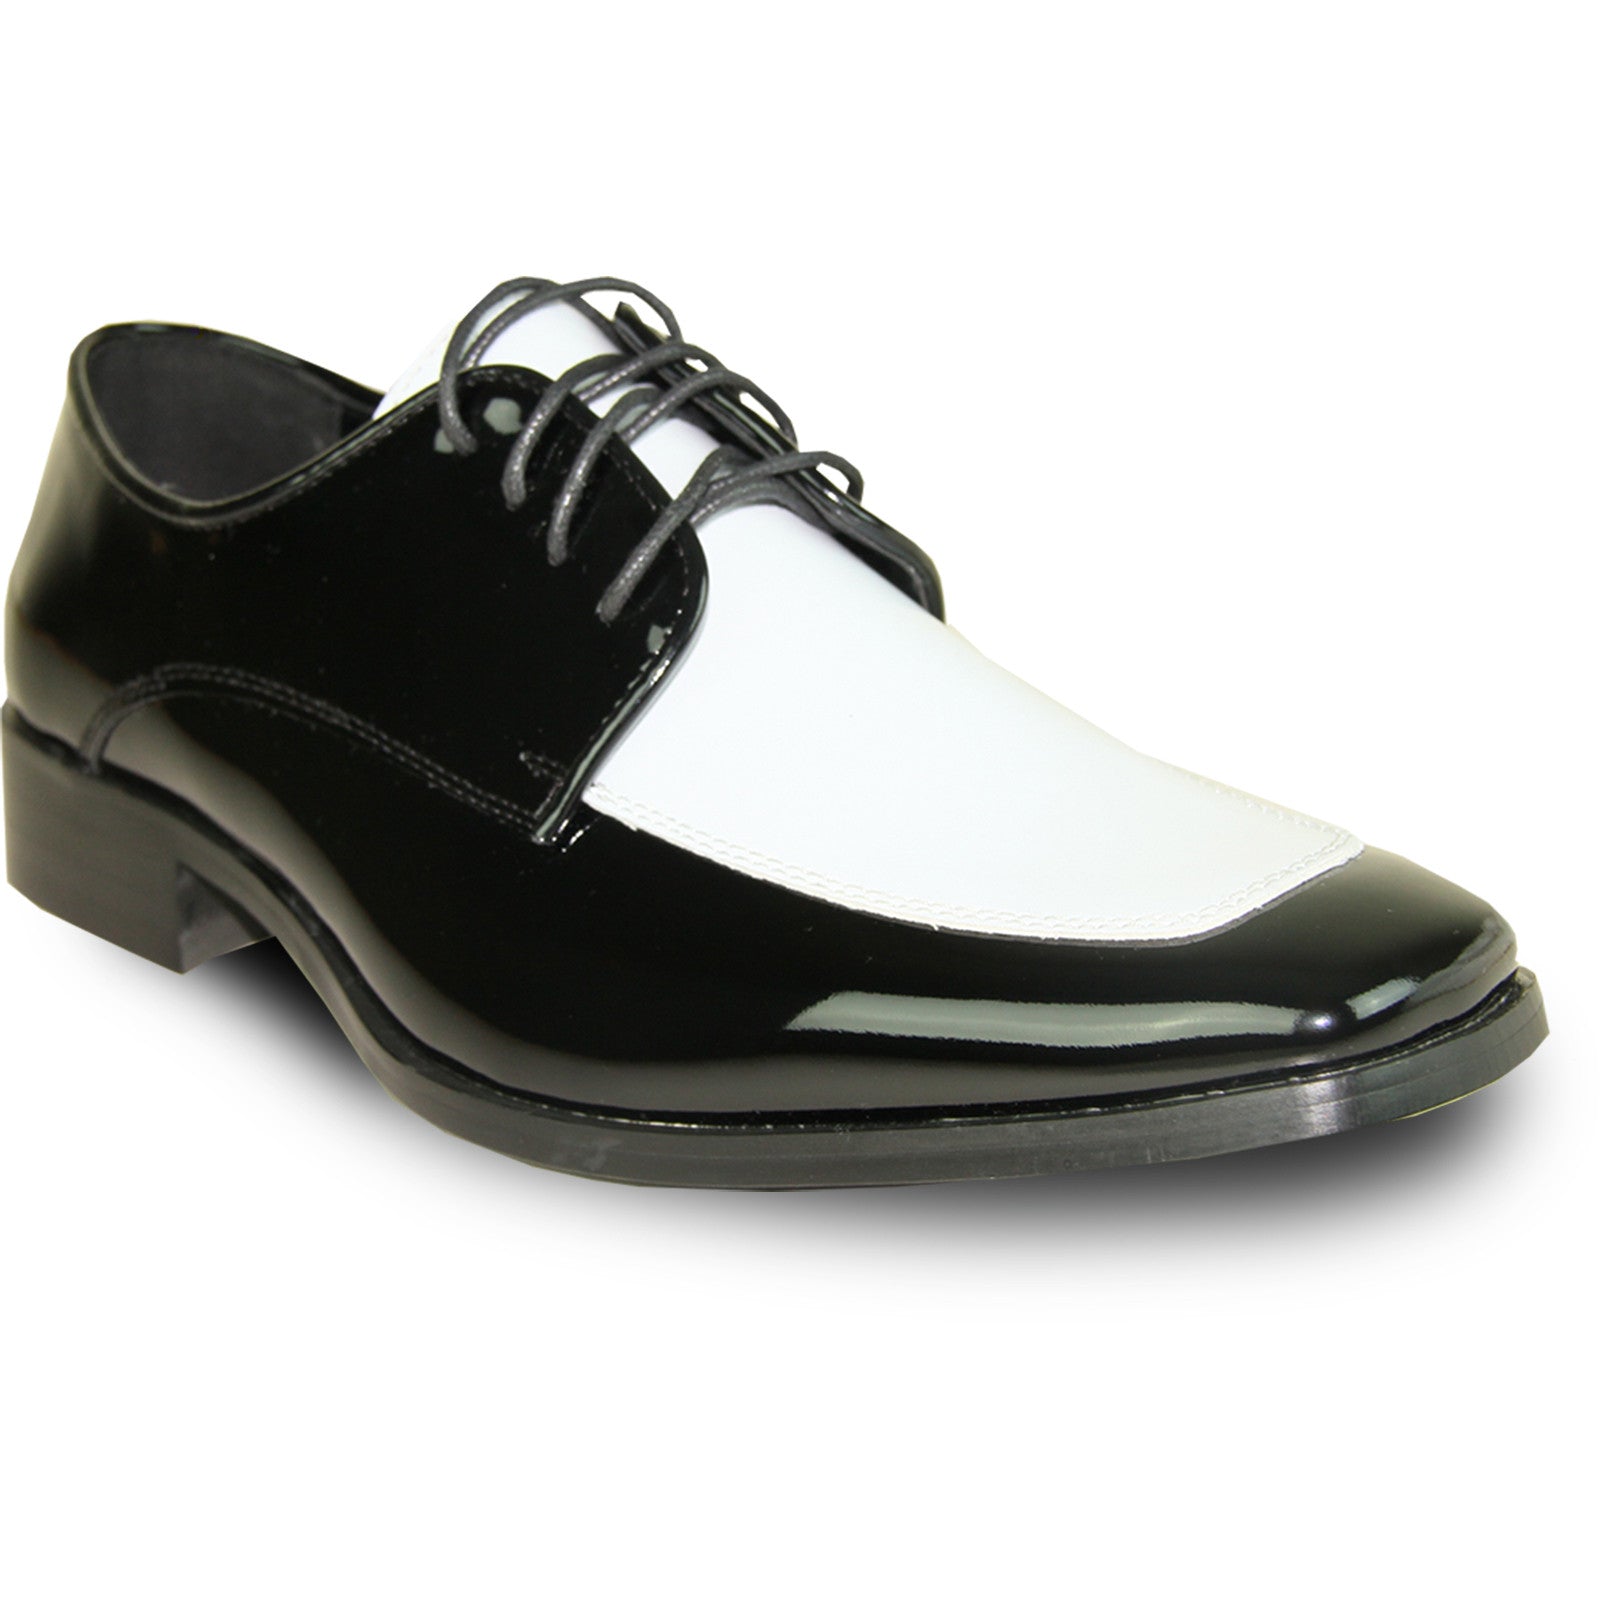 "Men's Classic Moc Toe Patent Tuxedo Prom Shoe - Black & White"